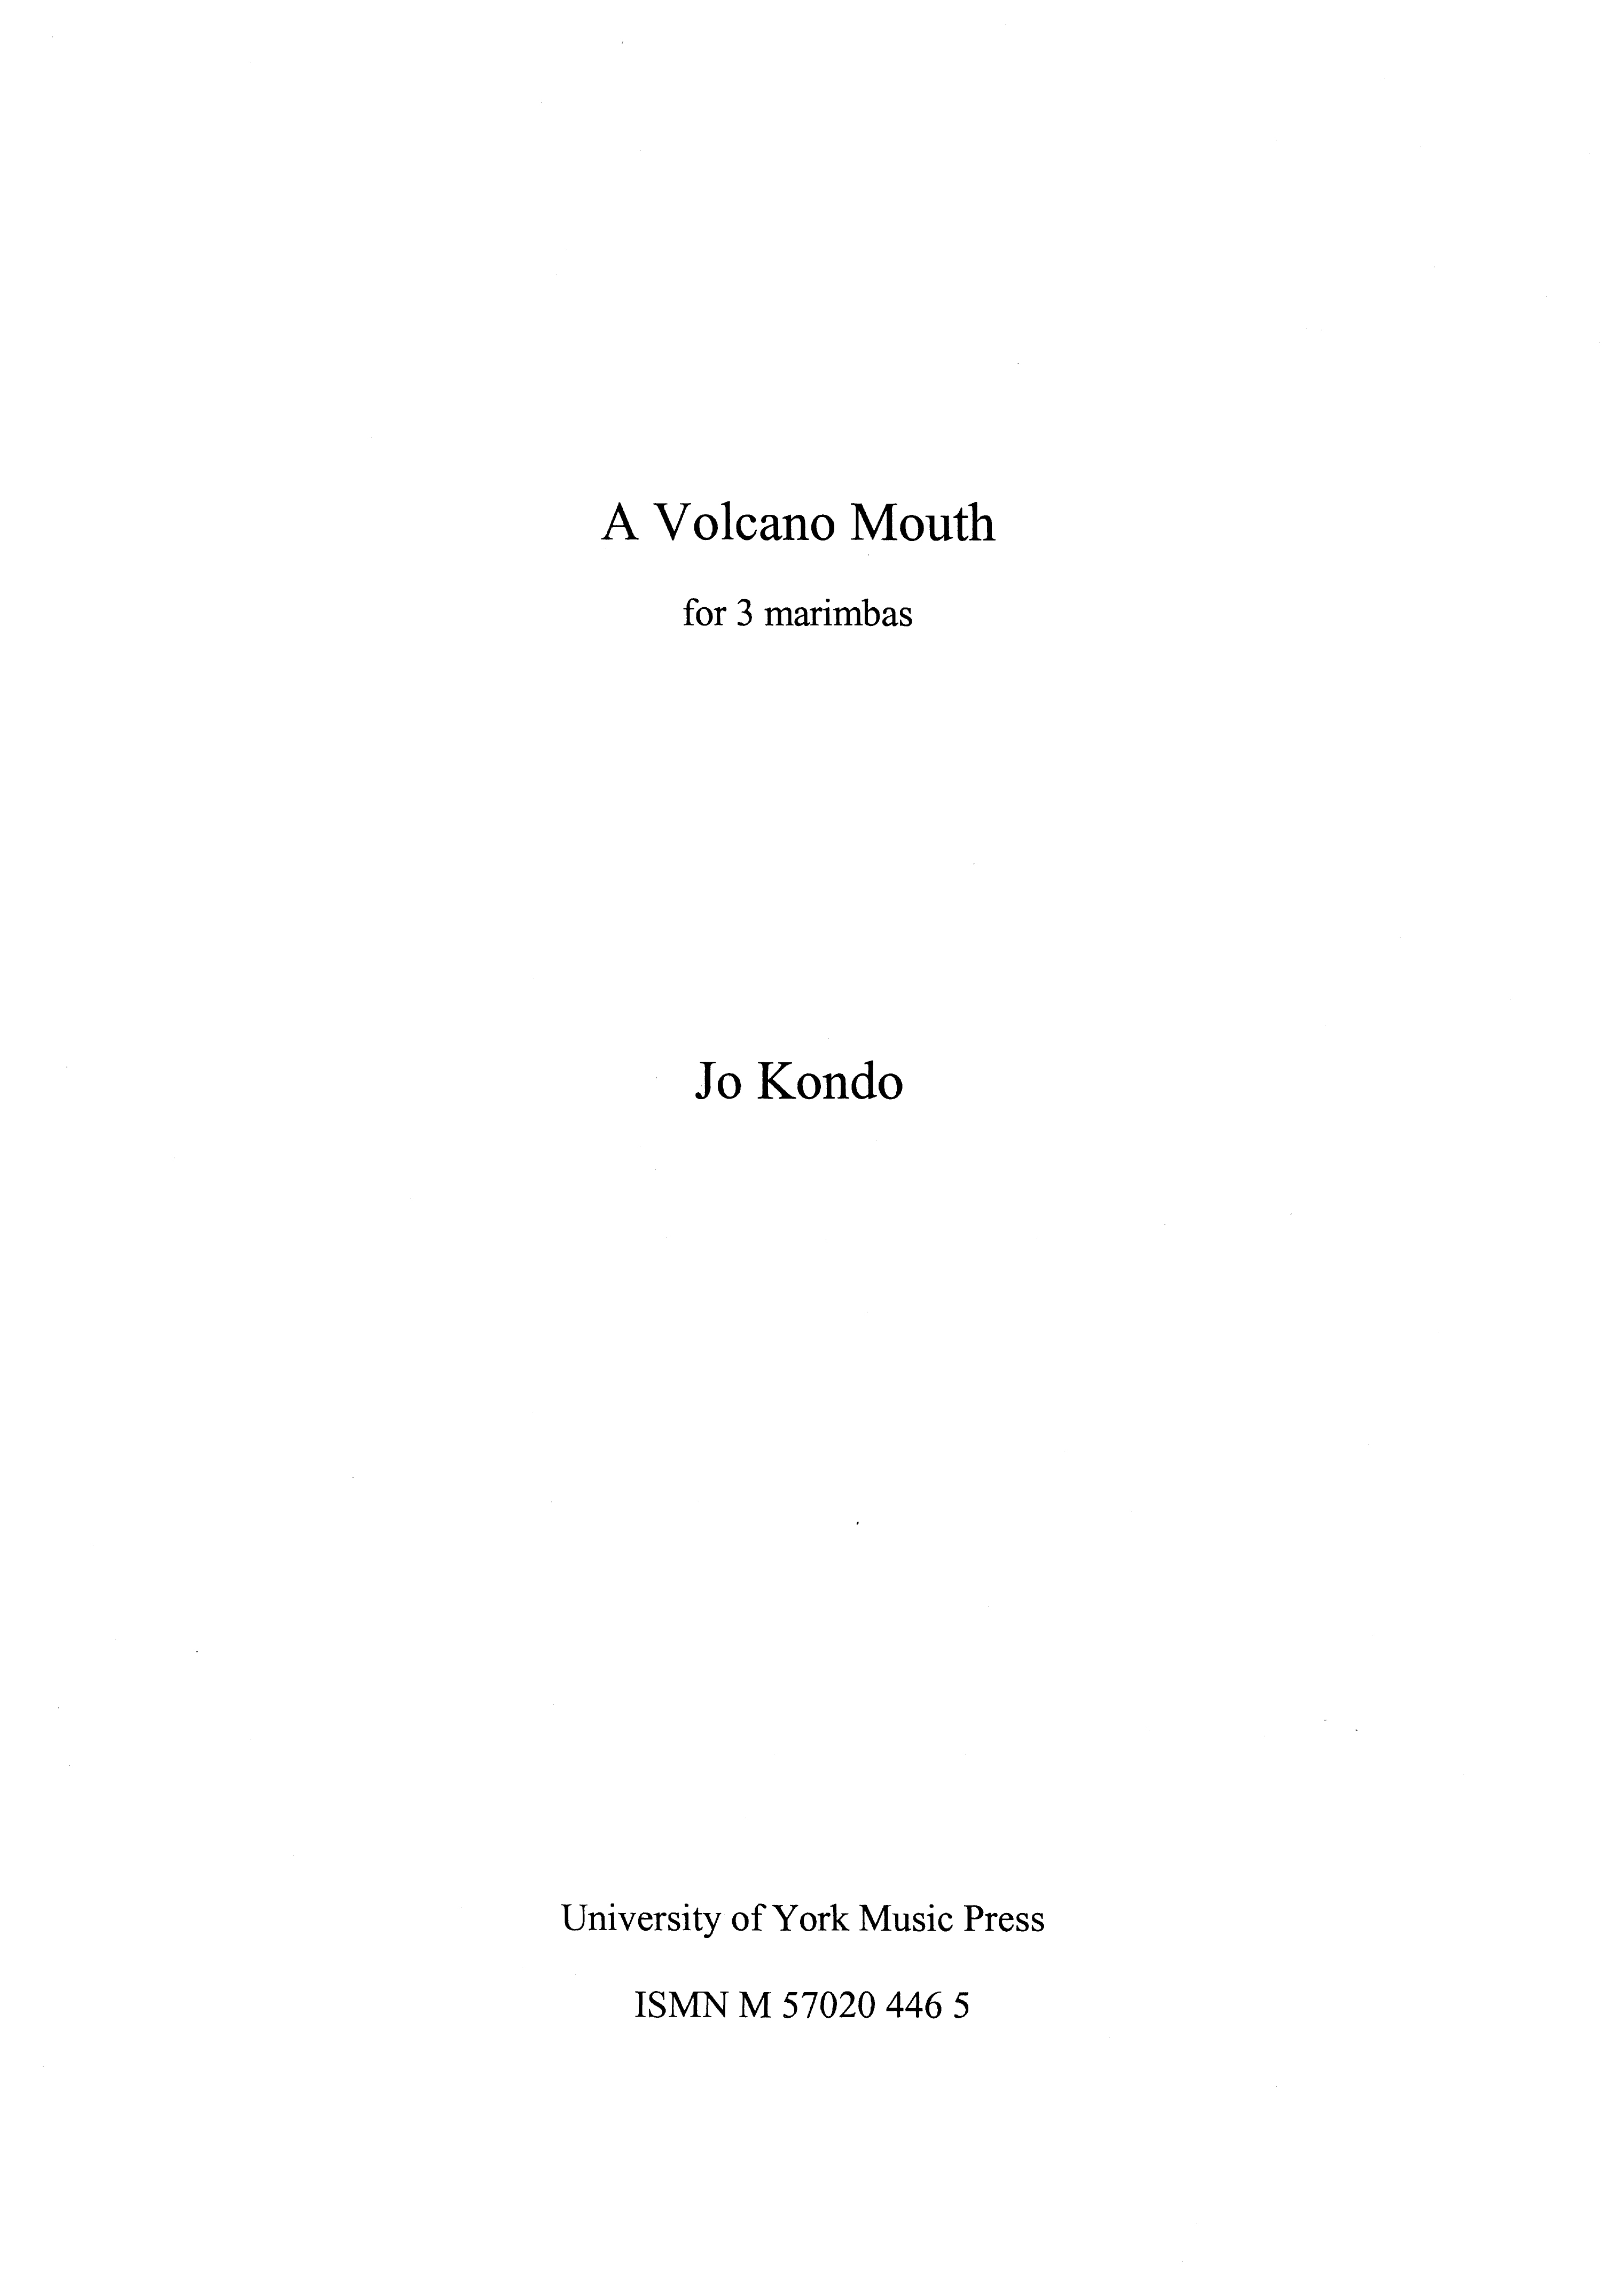 Jo Kondo: A Volcano Mouth: Marimba: Score and Parts